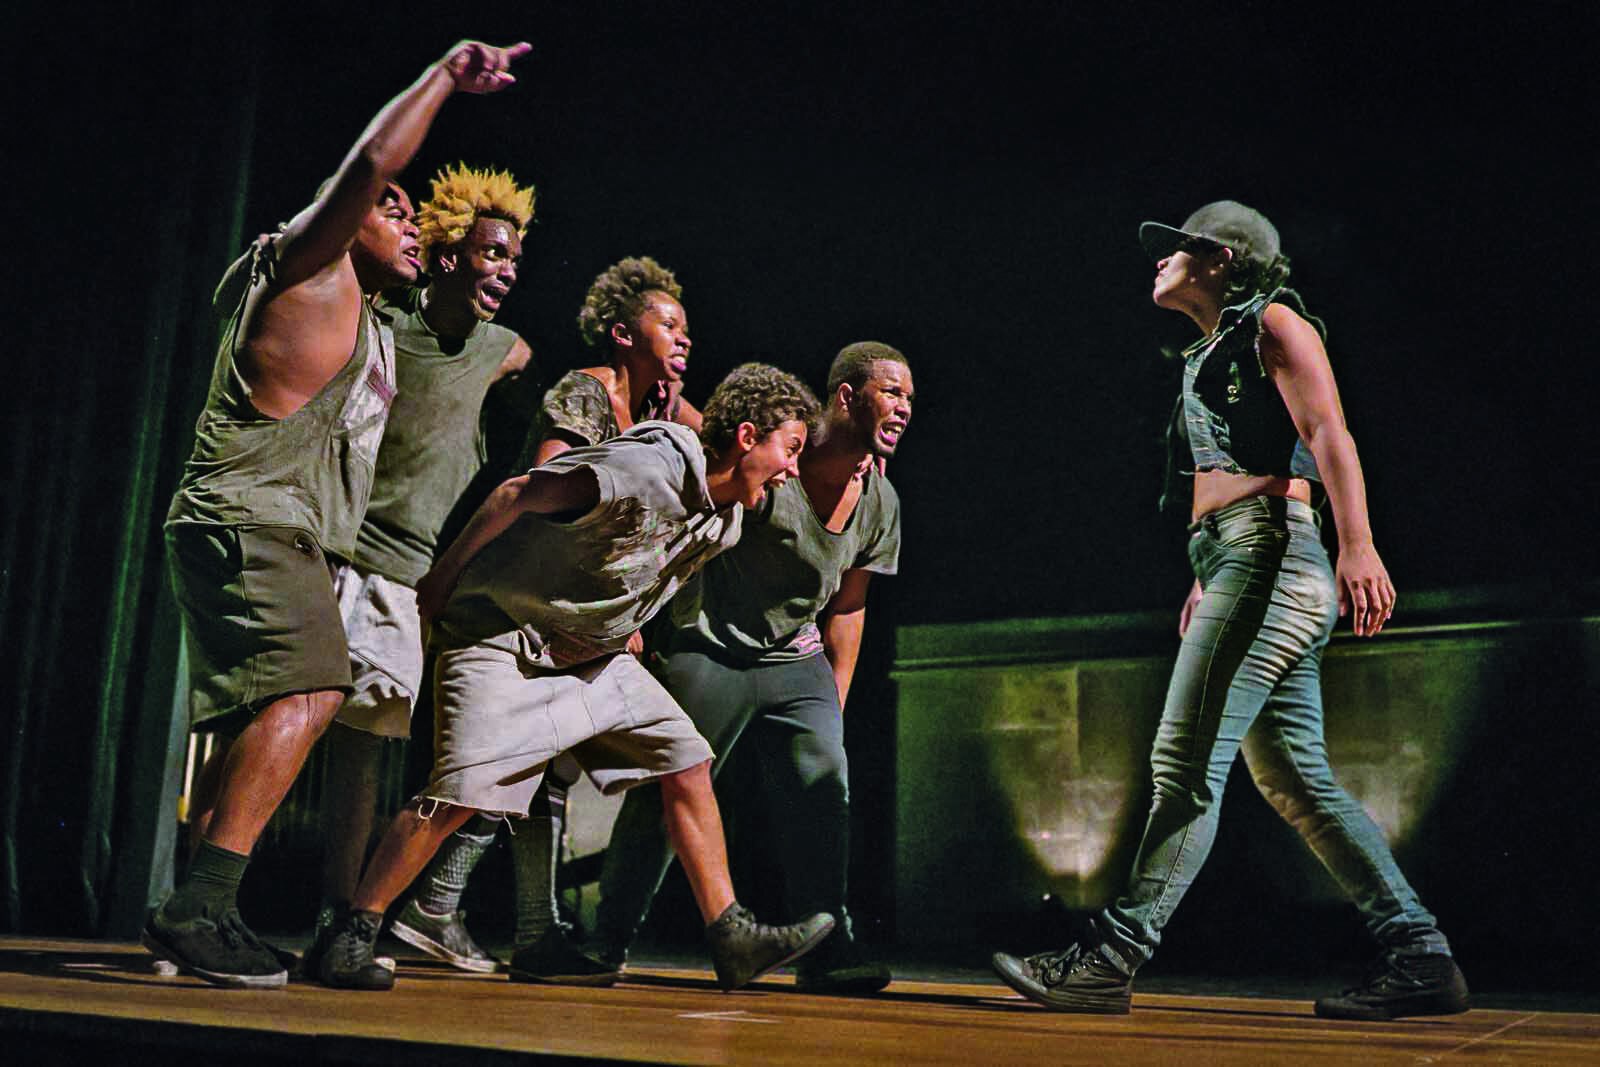 Fotografia. Grupo de dançarinos no palco. À esquerda, um grupo de cinco pessoas confronta uma mulher, que está à direita da foto. Todos usam roupas informais em tons de cinza e estão em movimento de dança.